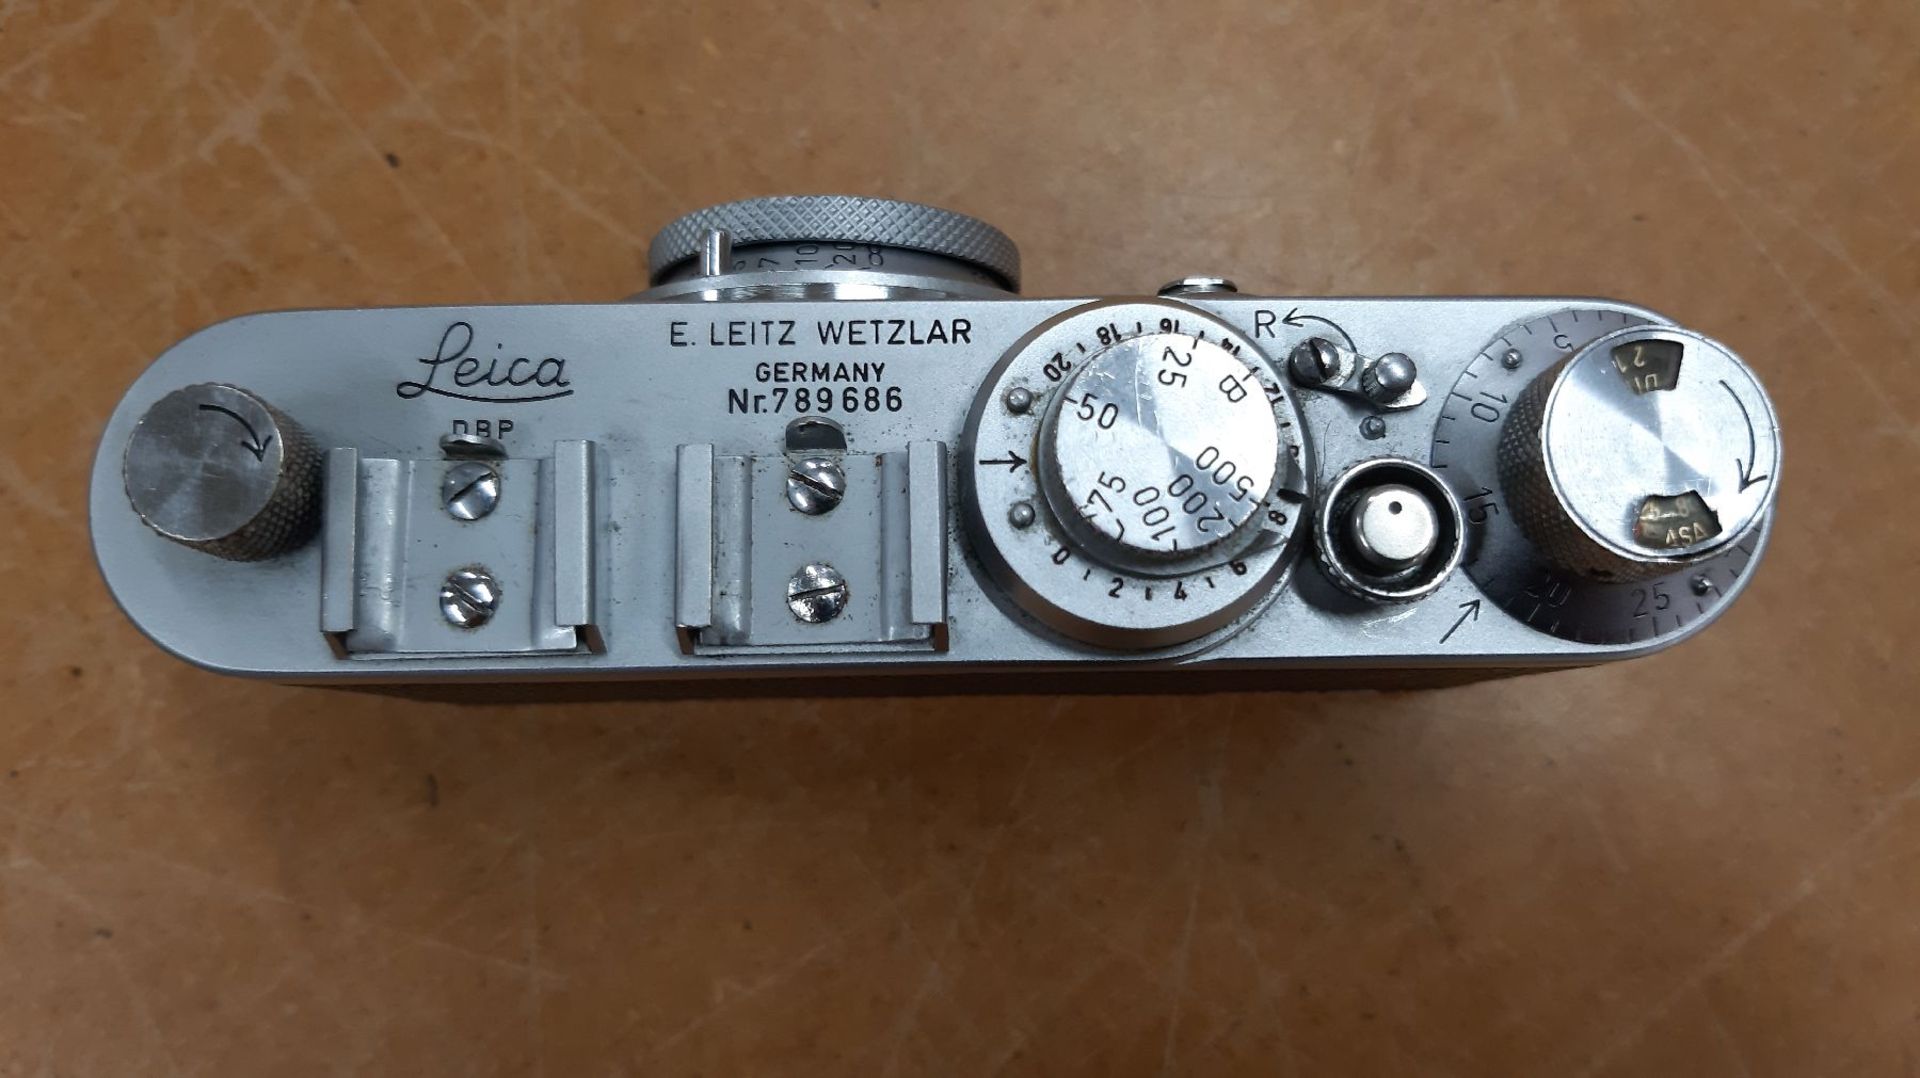 Leica-Kamera If, 1952 -56, No. 789686,  Belederung defekt, - Bild 3 aus 8